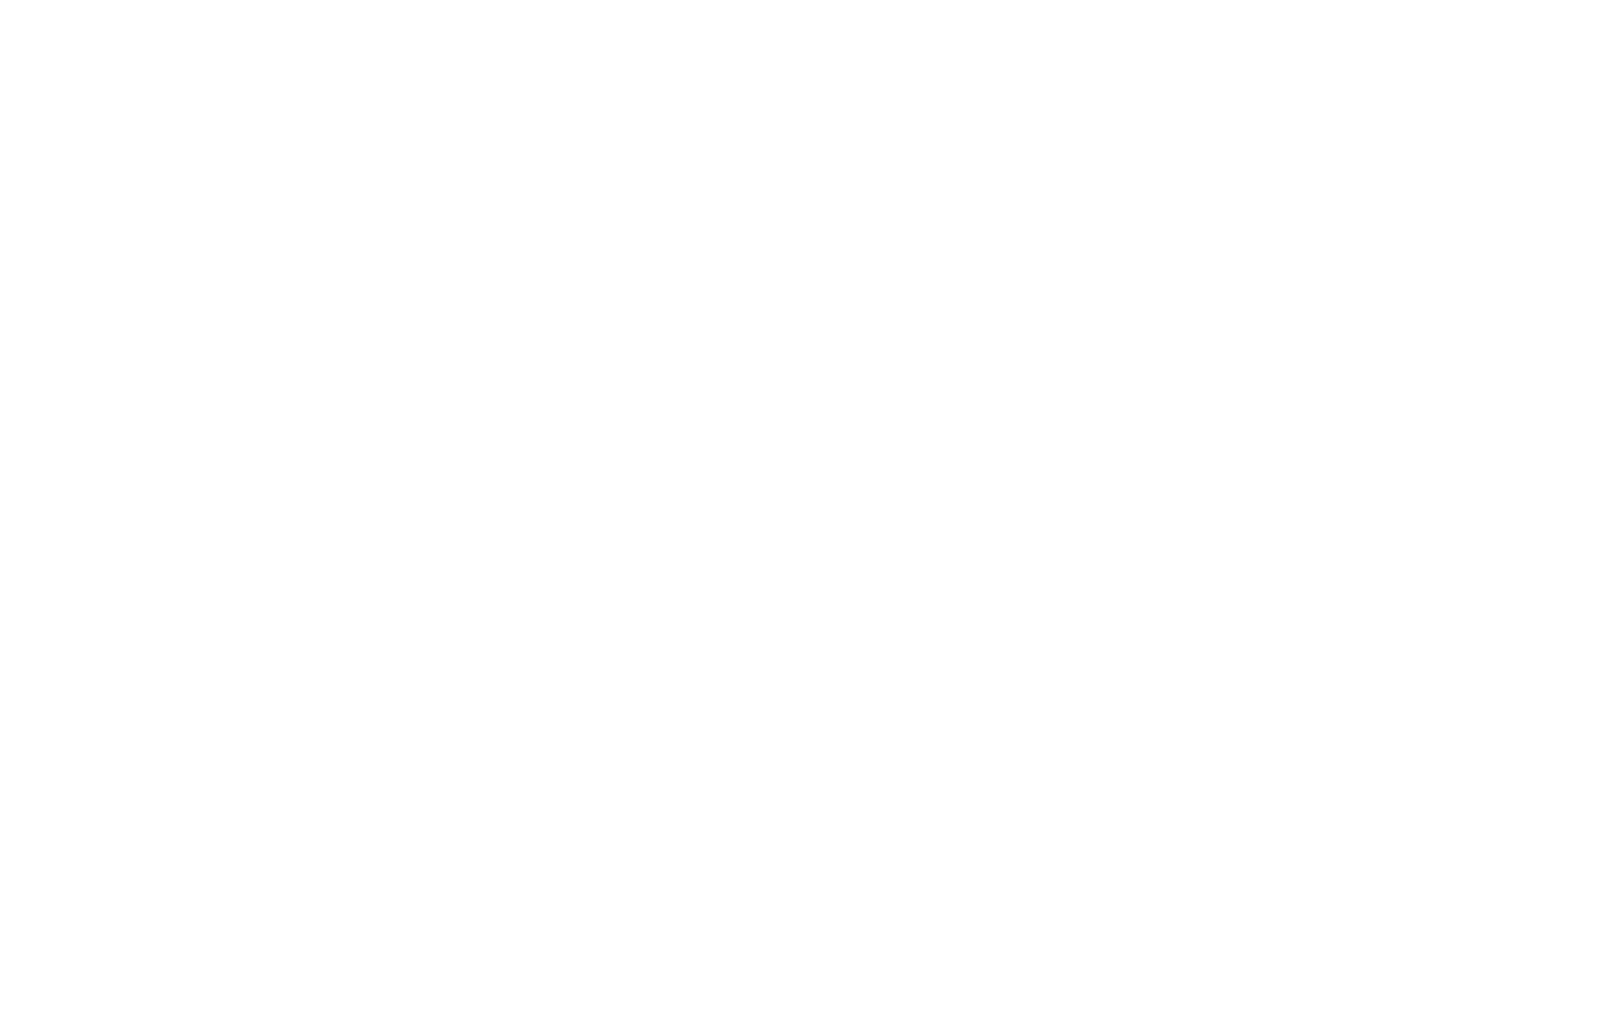 RobCo Media